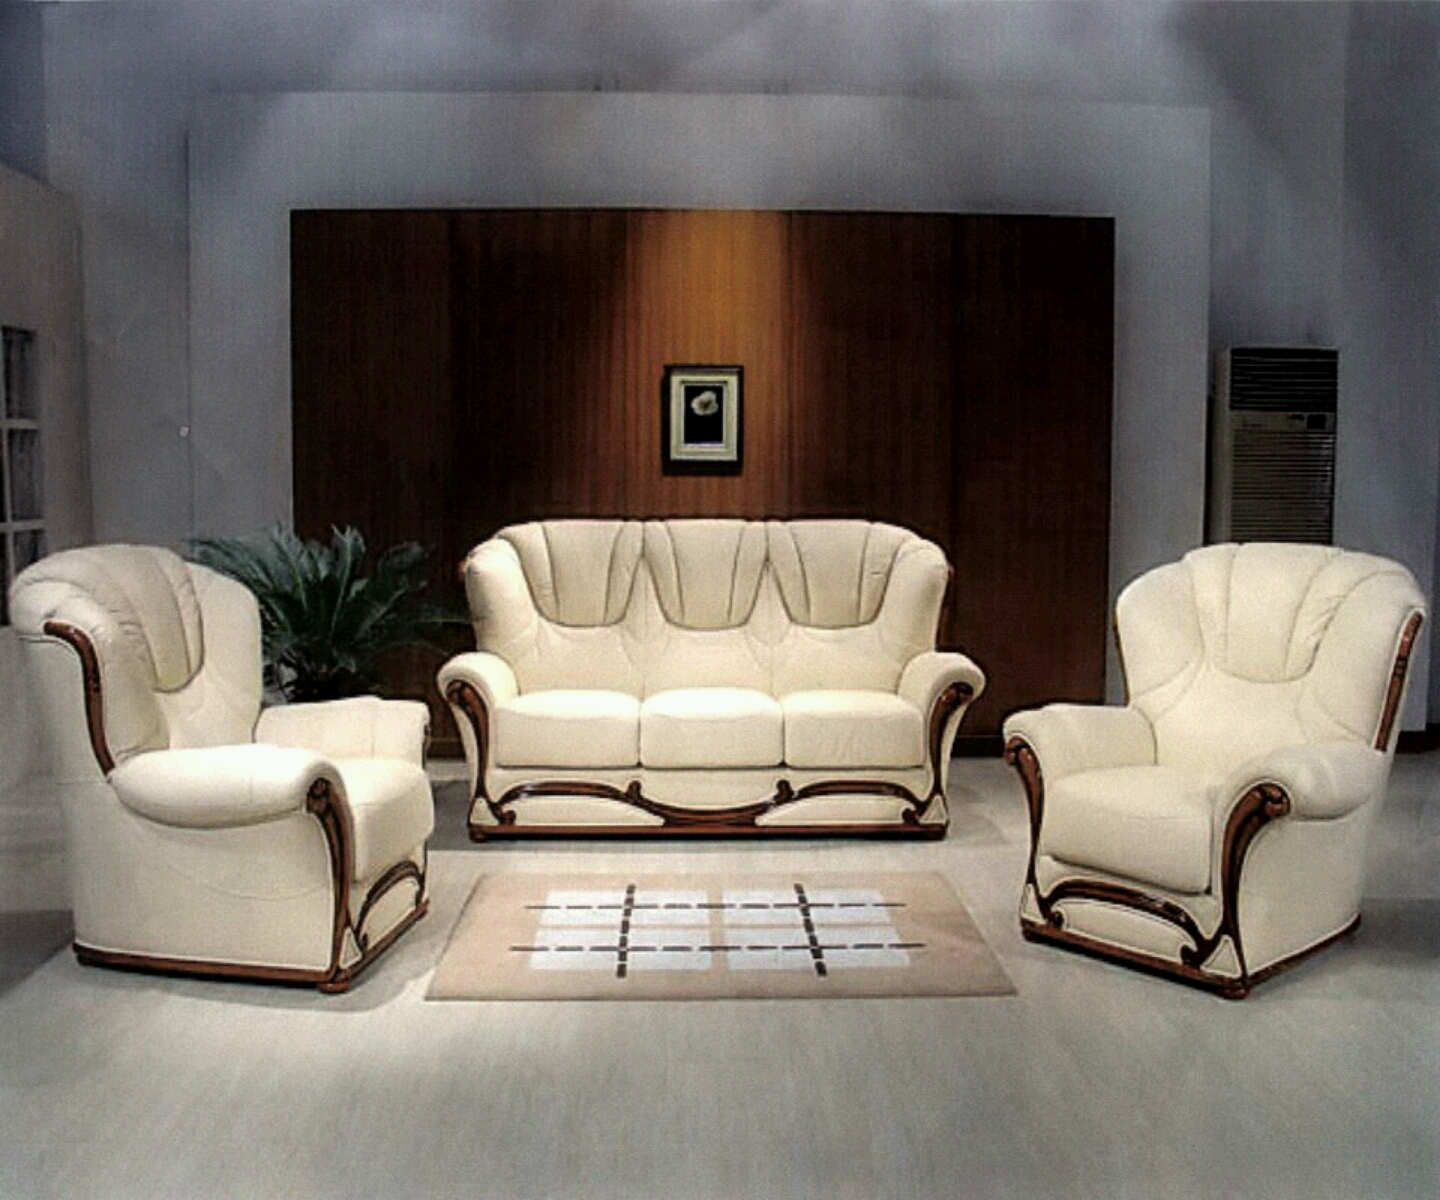 H for Heroine Modern sofa set designs  